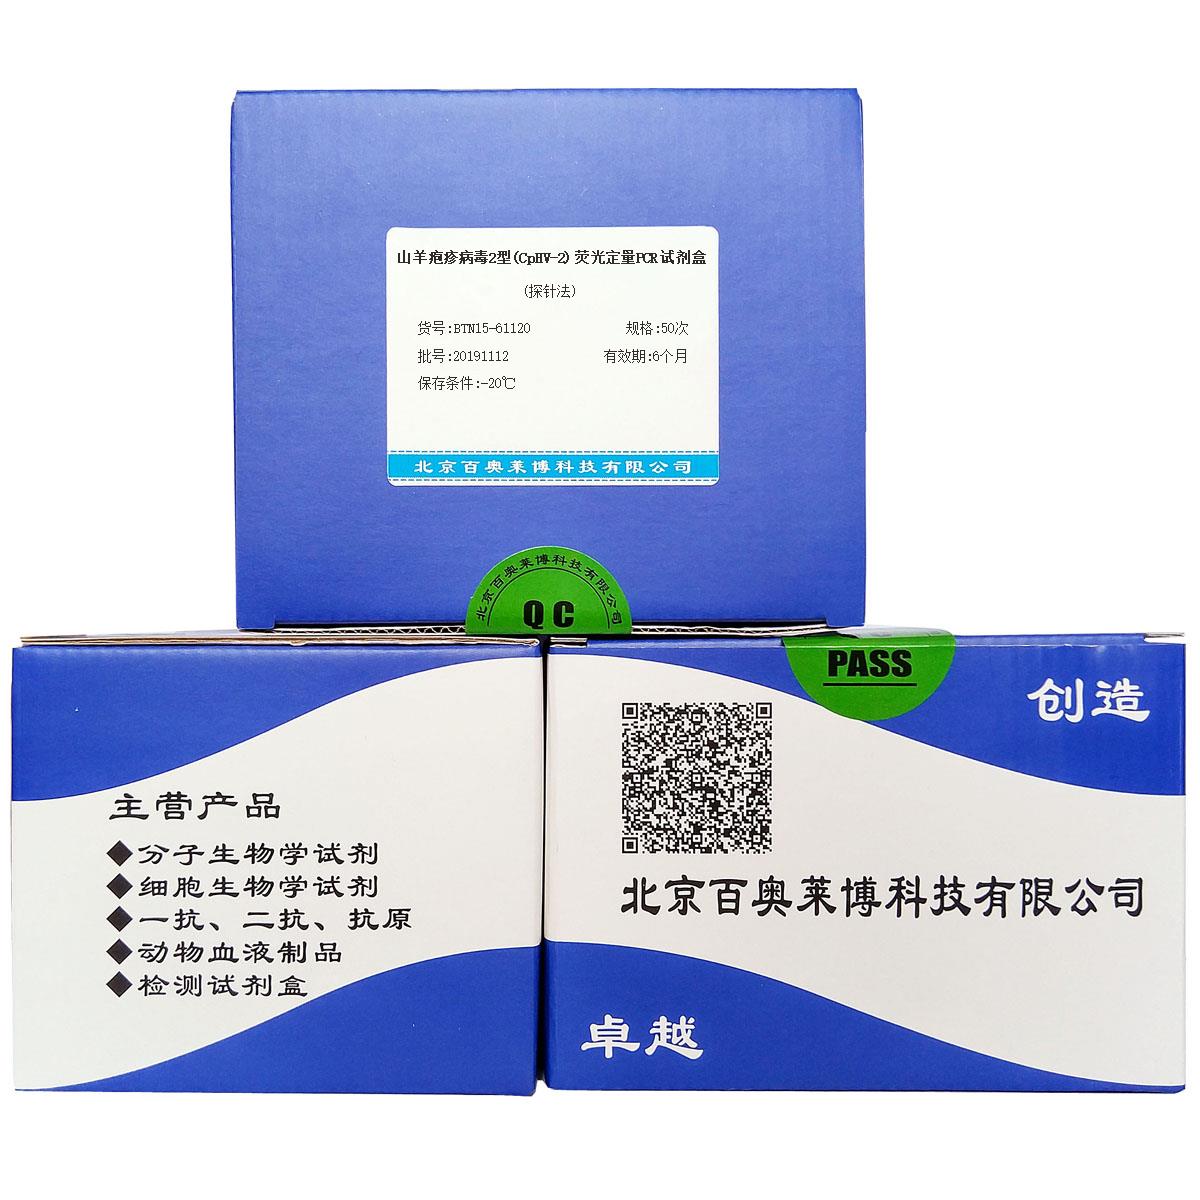 山羊疱疹病毒2型(CpHV-2)荧光定量PCR试剂盒(探针法)